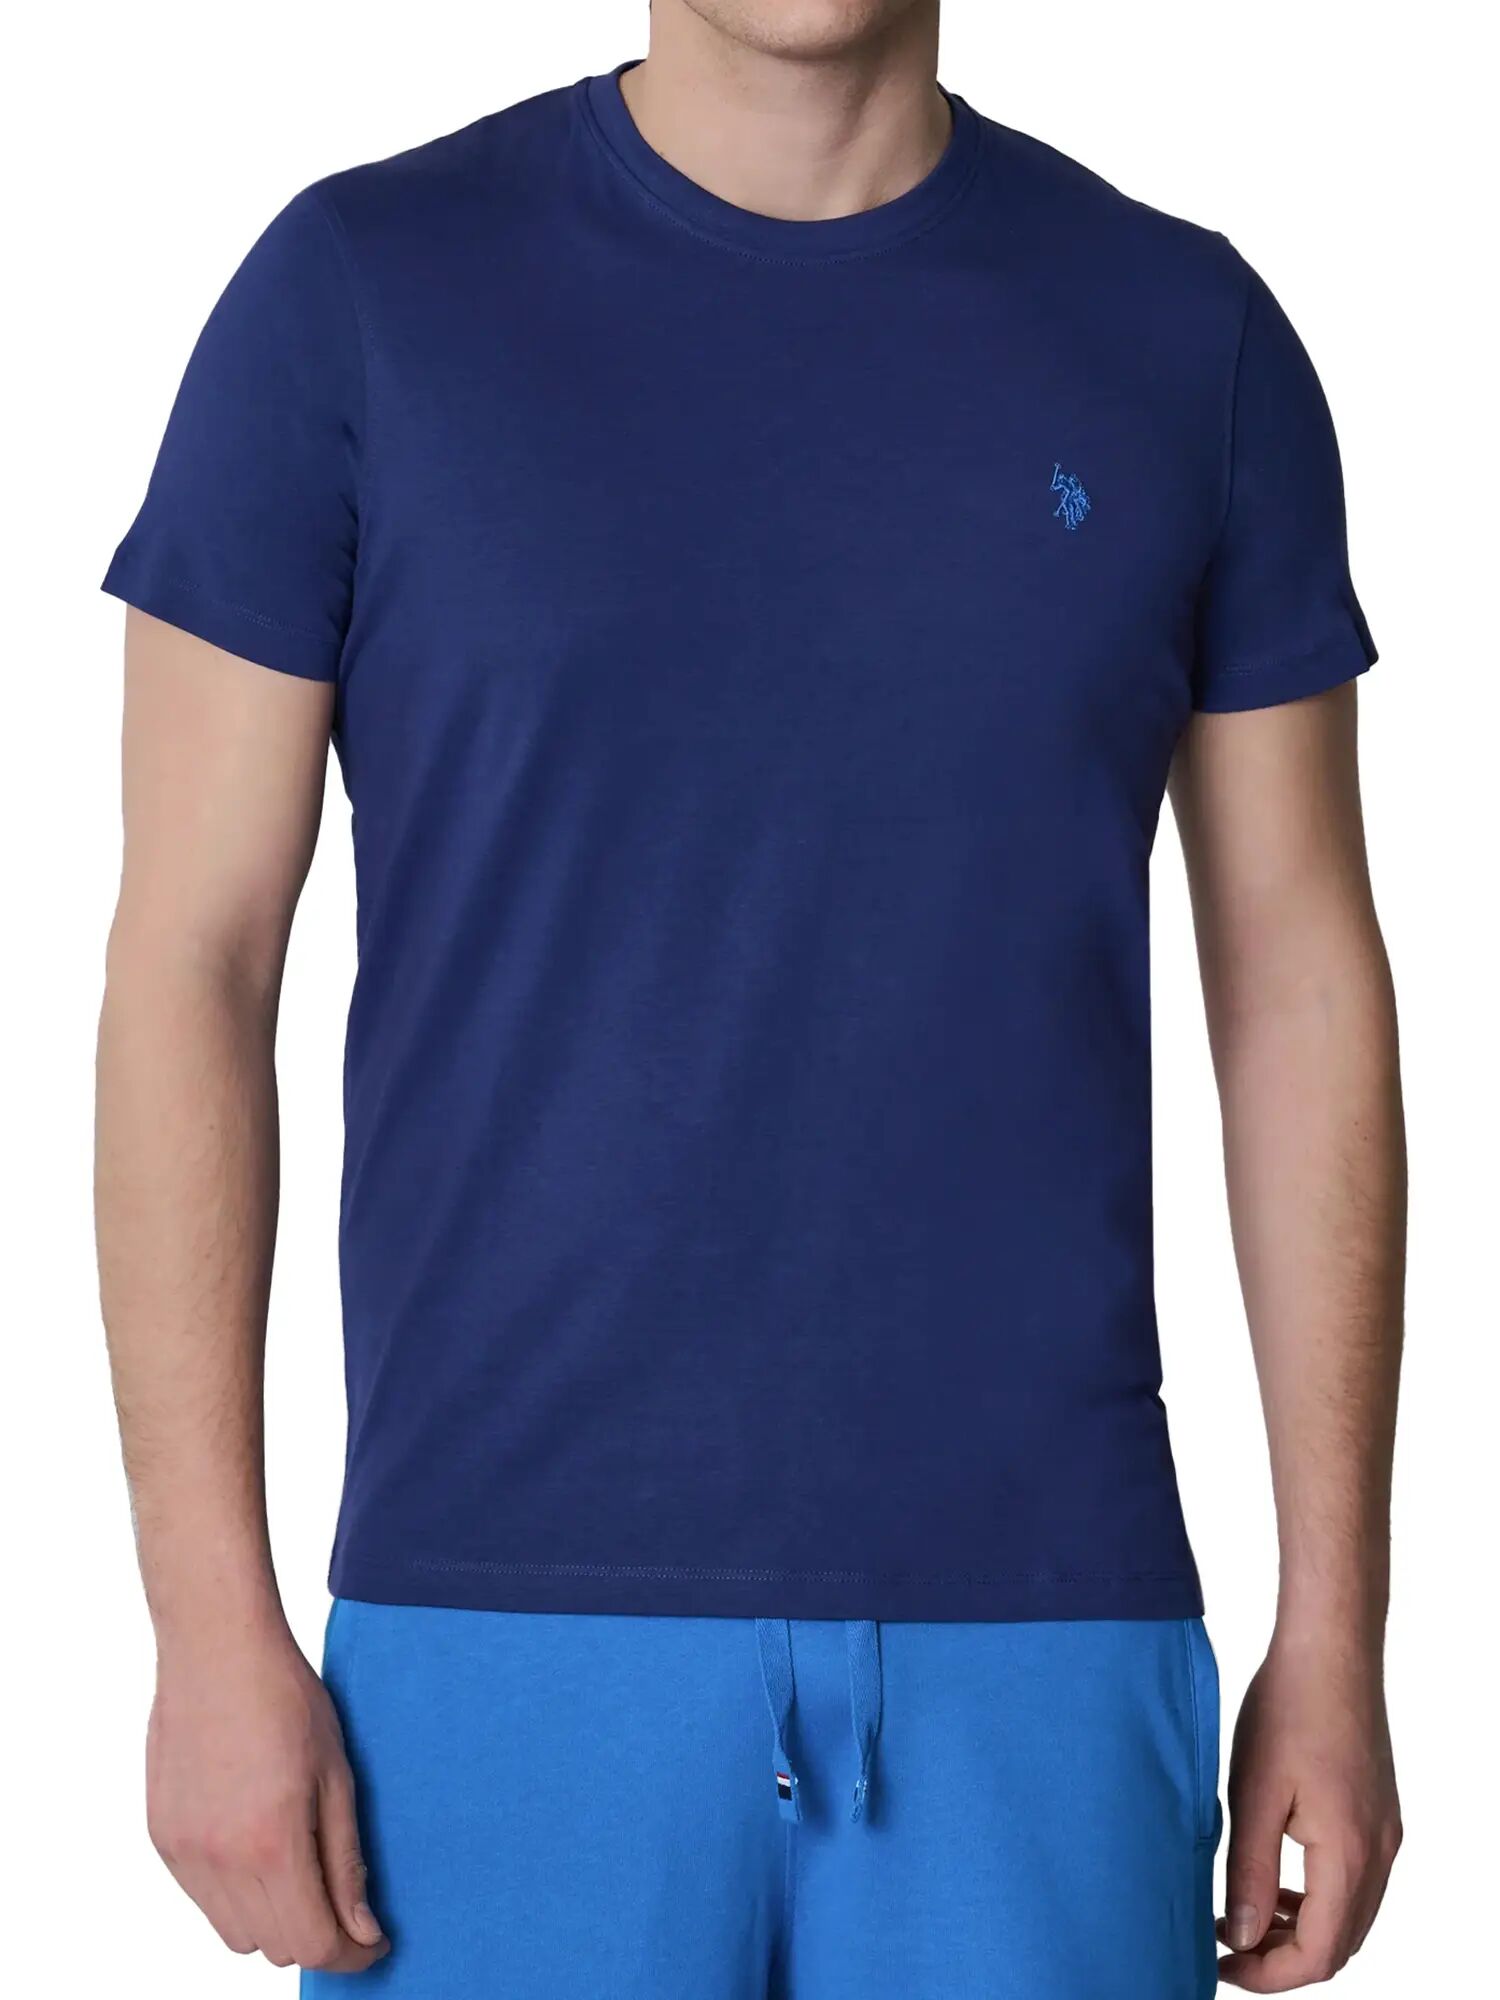 Us Polo Assn. T-shirt Uomo Colore Blu BLU S